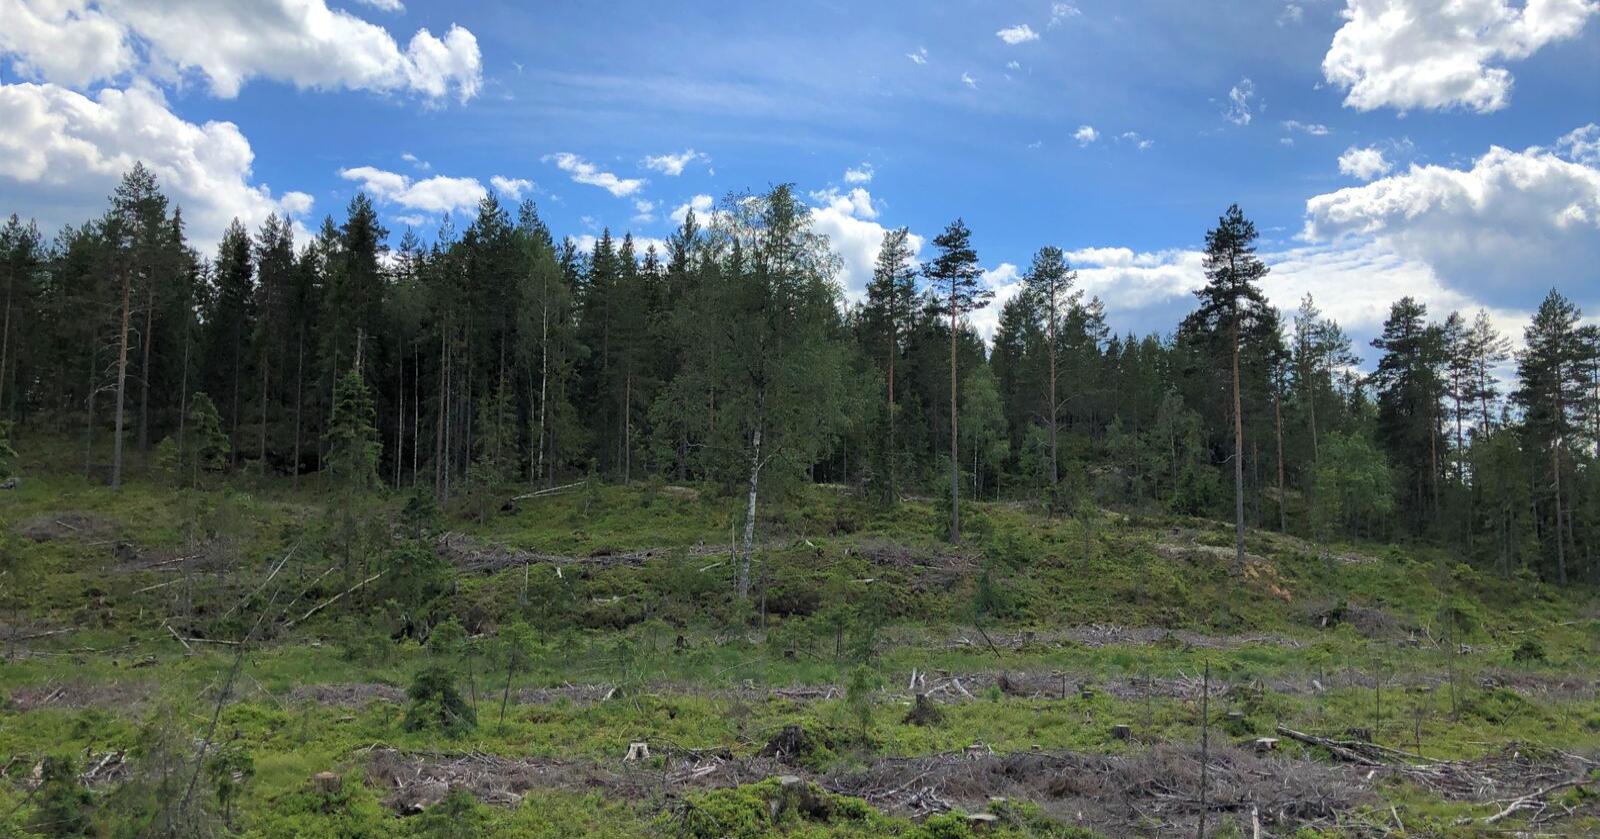 Ved en flatehogst hogges de fleste trærne på flata, deretter plantes det på nytt. Foto: Ida Aarø, Norges Skogeierforbund